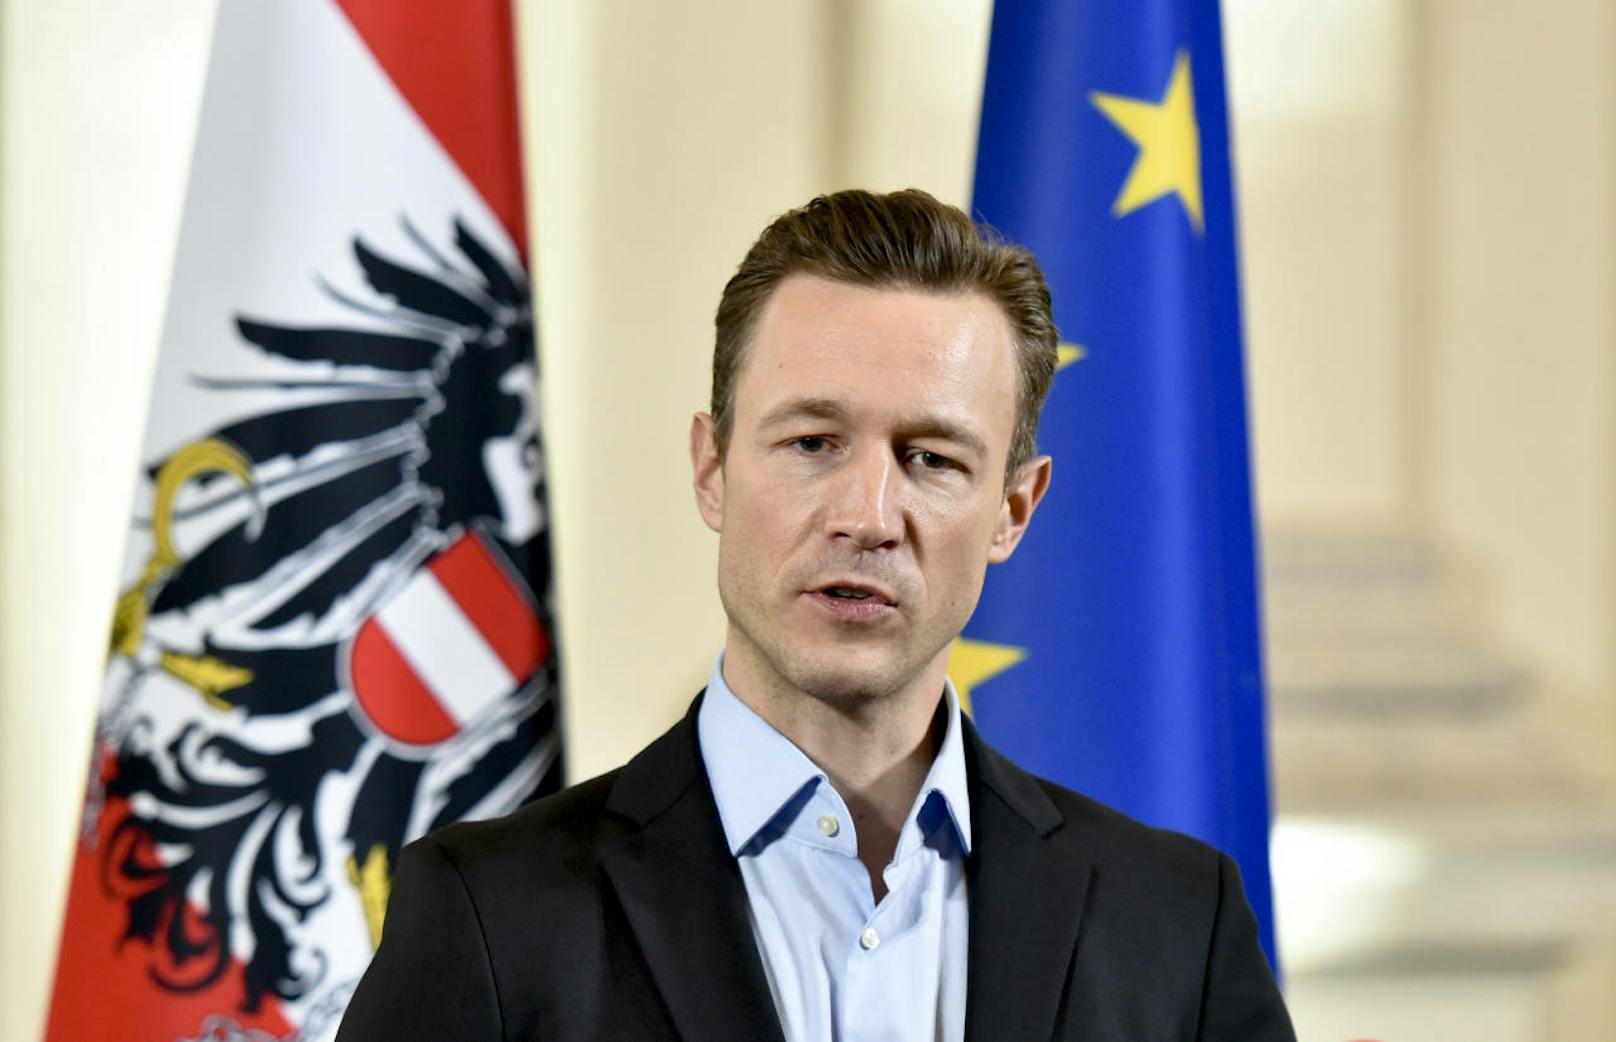 Der Wiener Landesparteiobmann und einer der engsten Vertrauten von Sebastian Kurz, <b>Gernot Blümel (ÖVP)</b>, wurde <b>Kanzleramtsminister</b> und auch für EU und Medien zuständig.